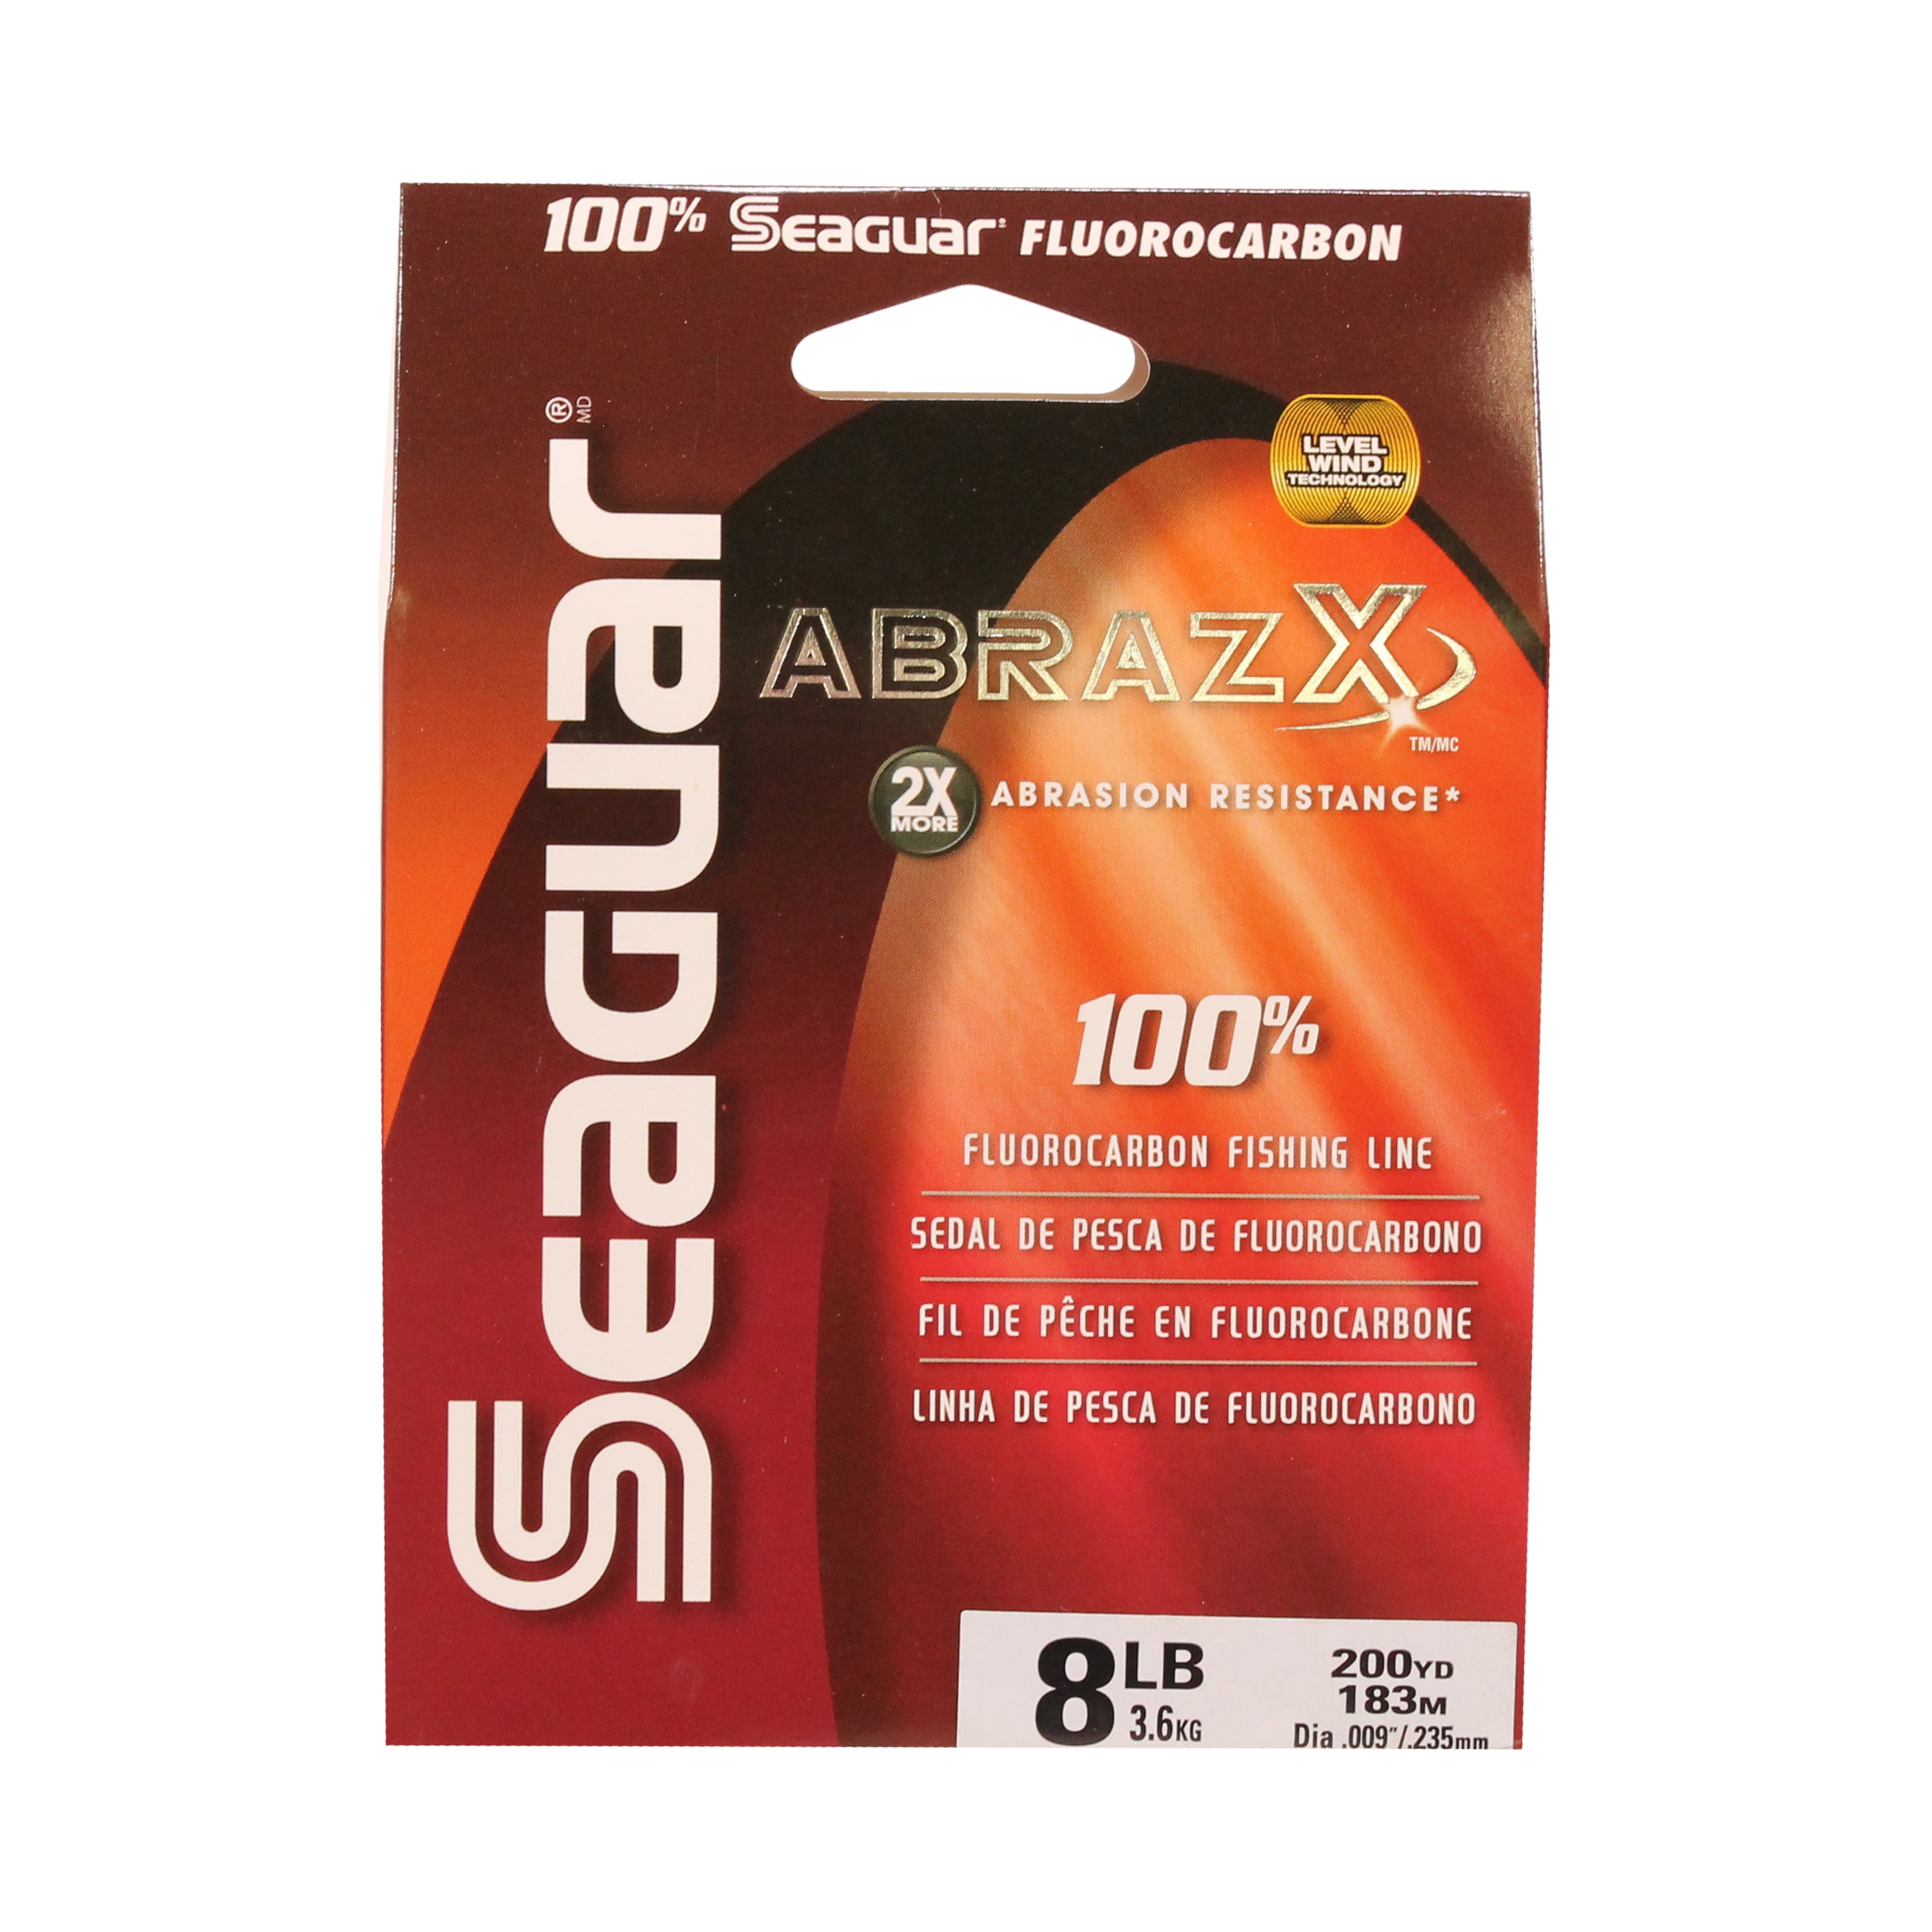 Seaguar AbrazX 100% Fluorocarbon Fishing Line 10lbs, 200yds Break